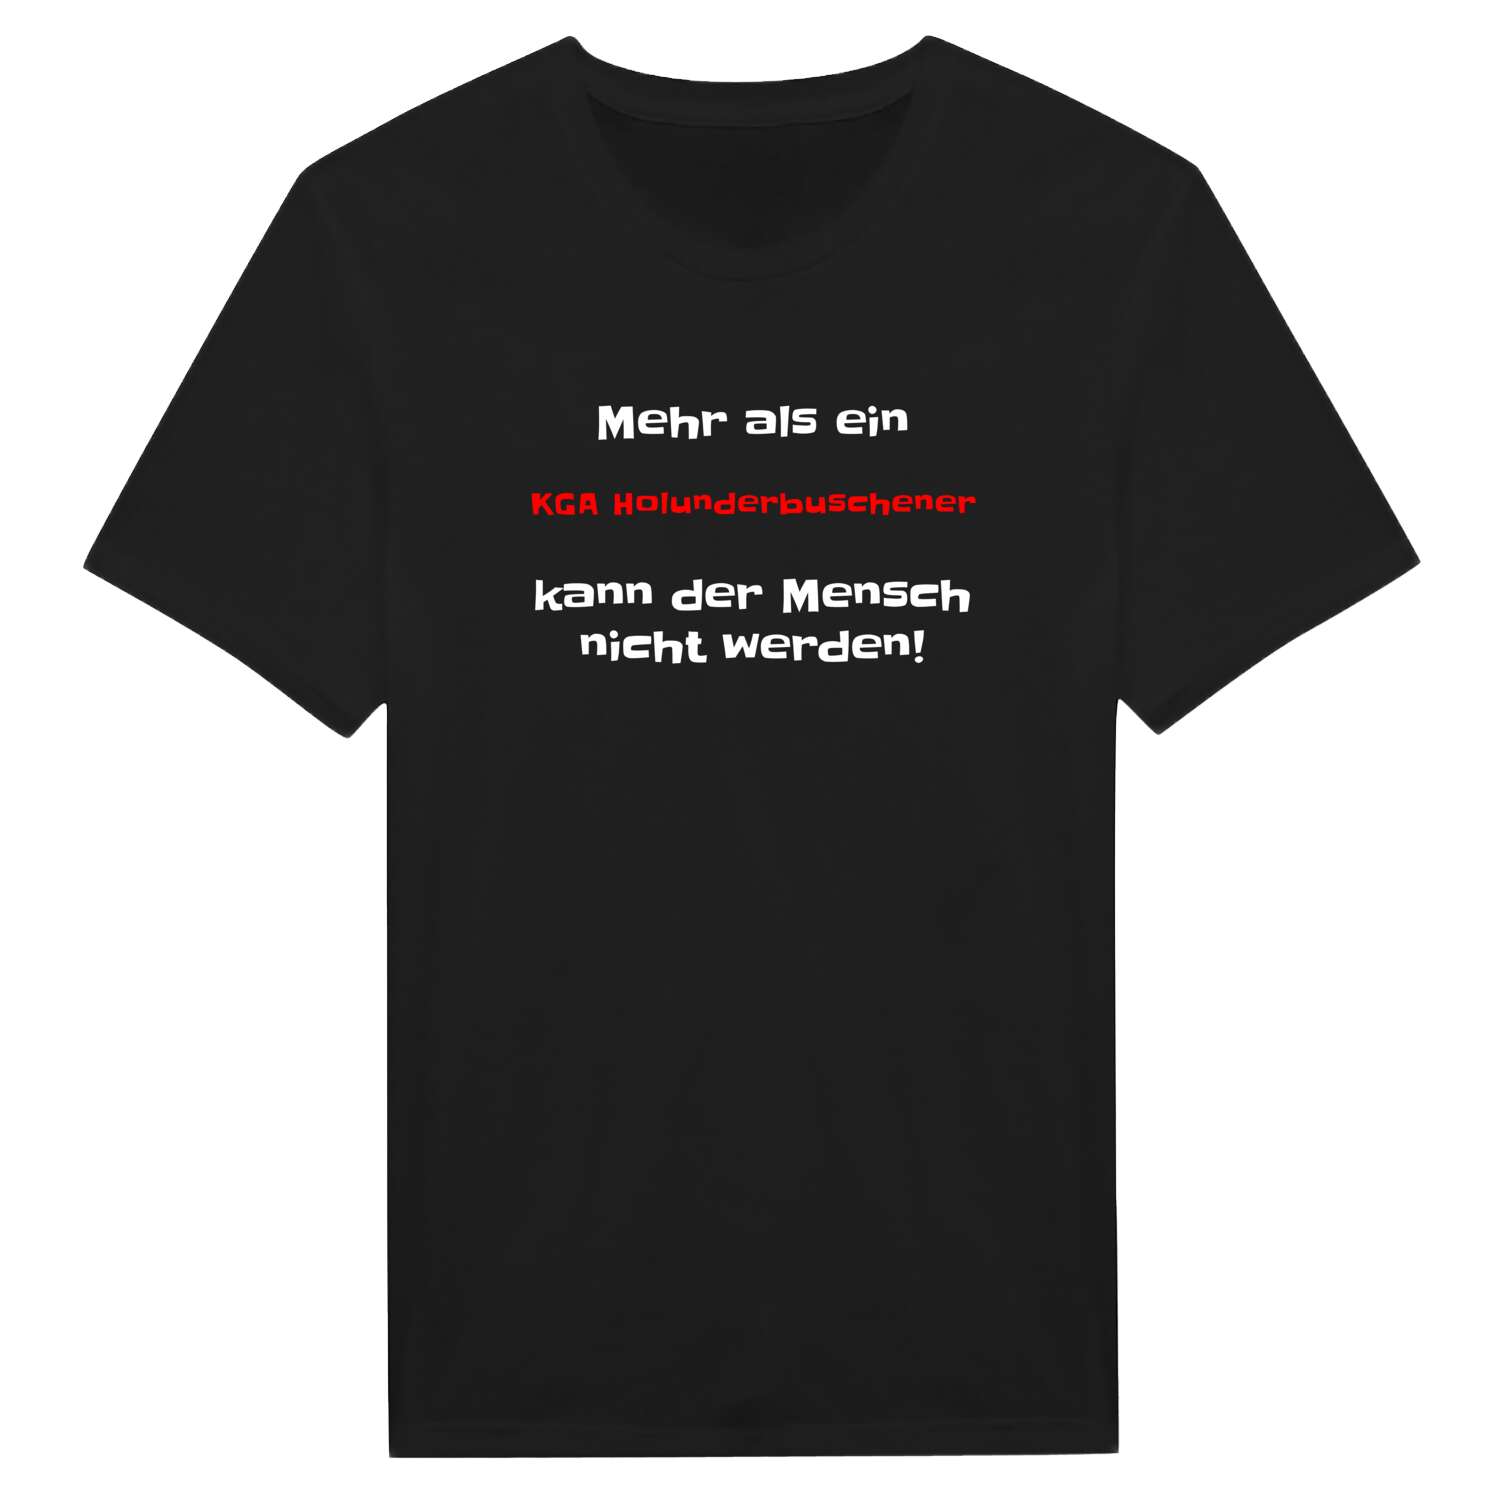 KGA Holunderbusch T-Shirt »Mehr als ein«